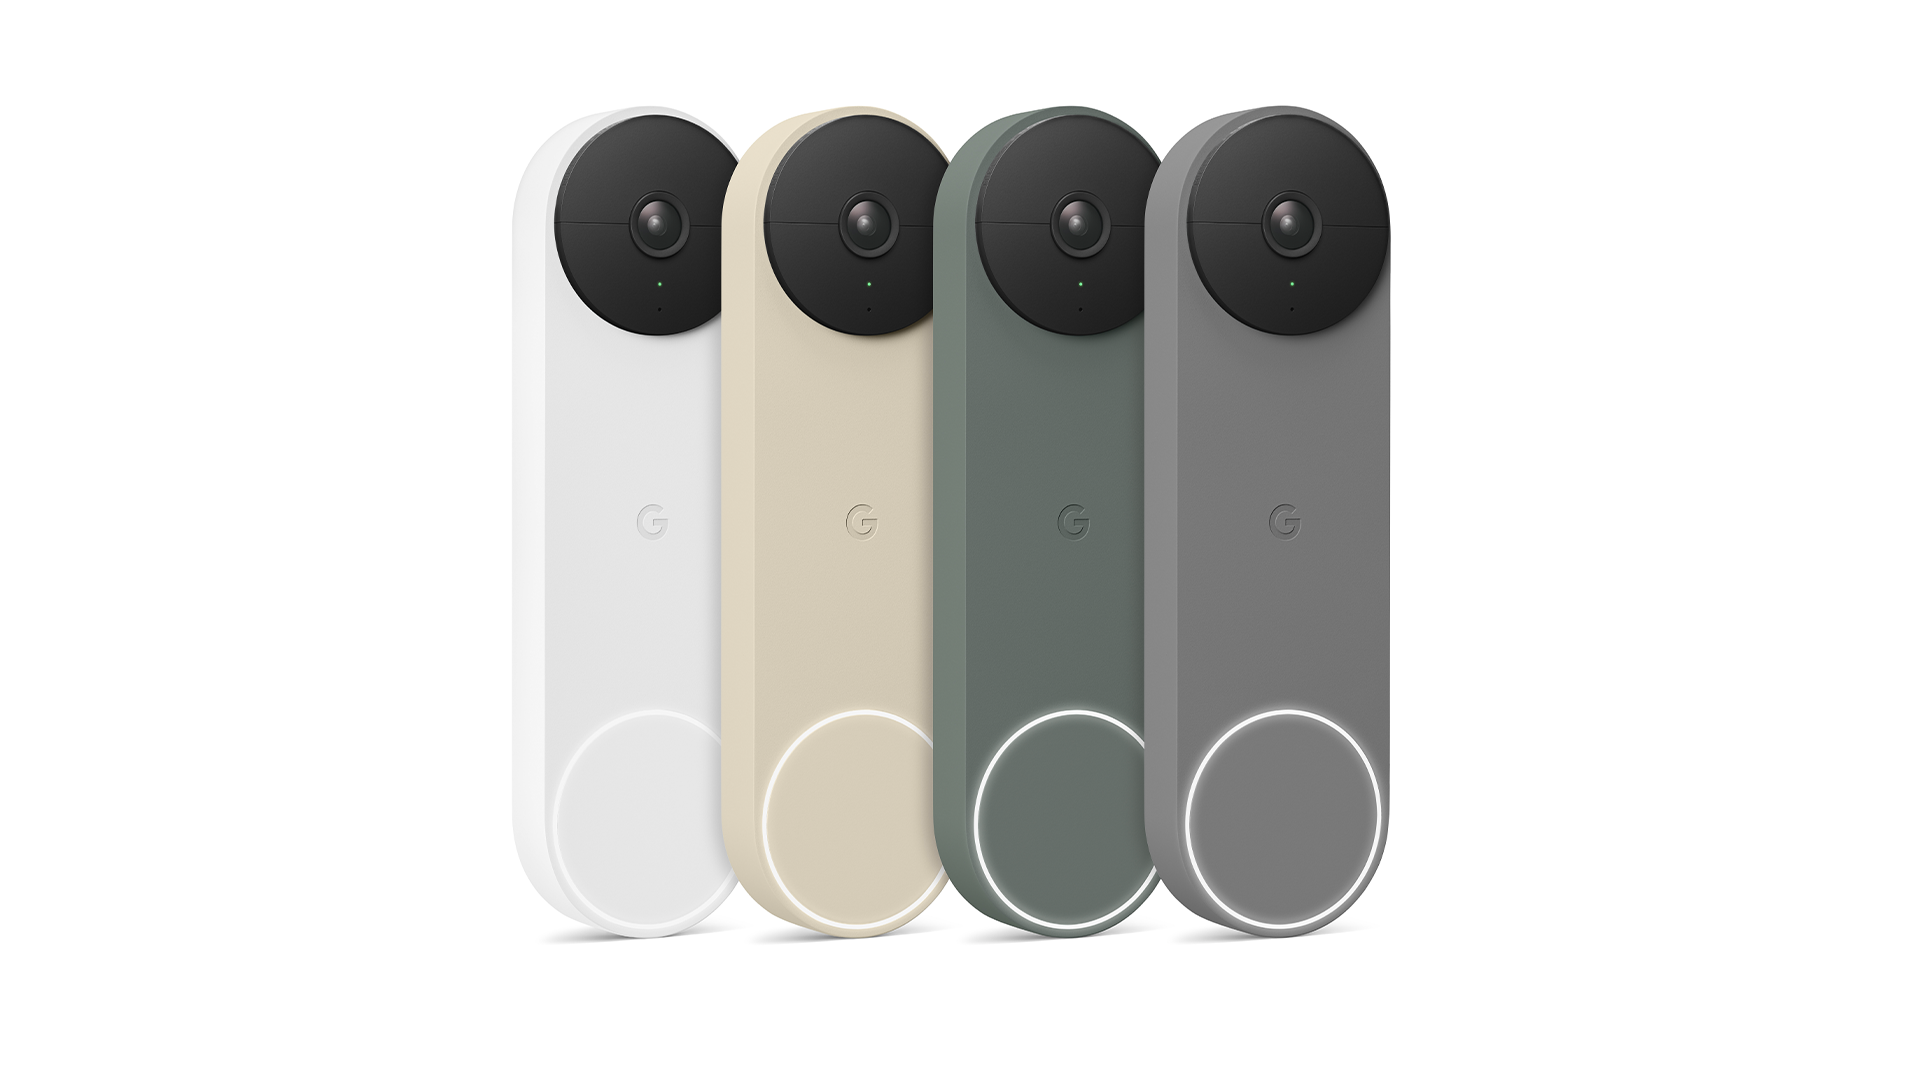 Chuông cửa Google Nest có bốn màu.